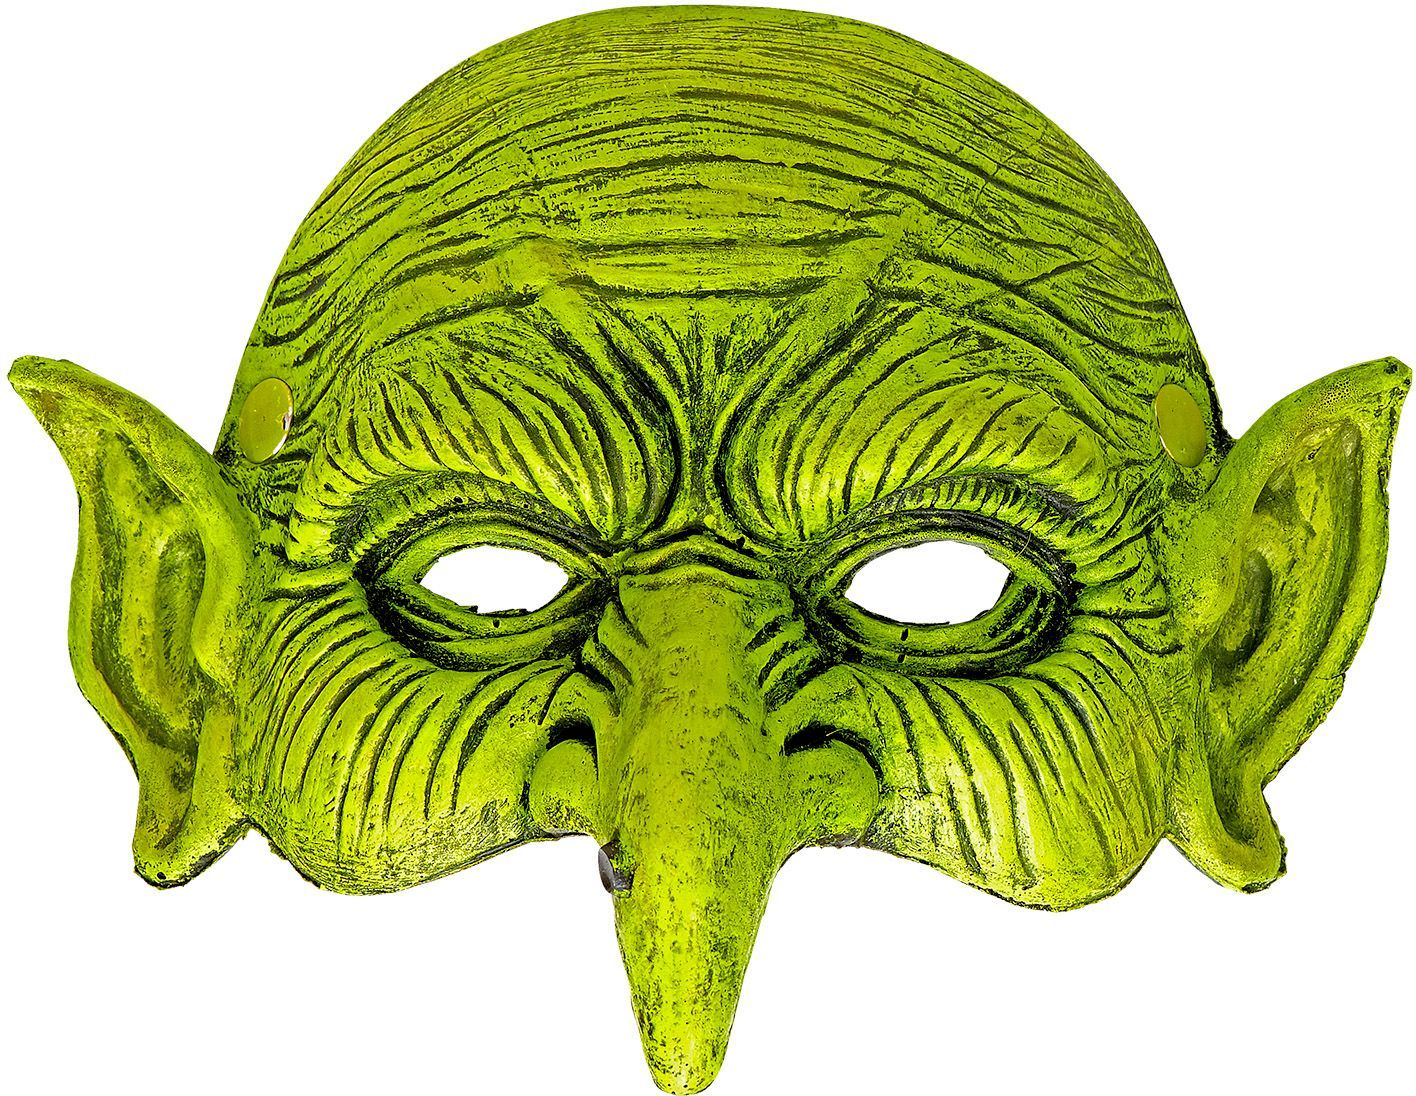 Heksen masker groen